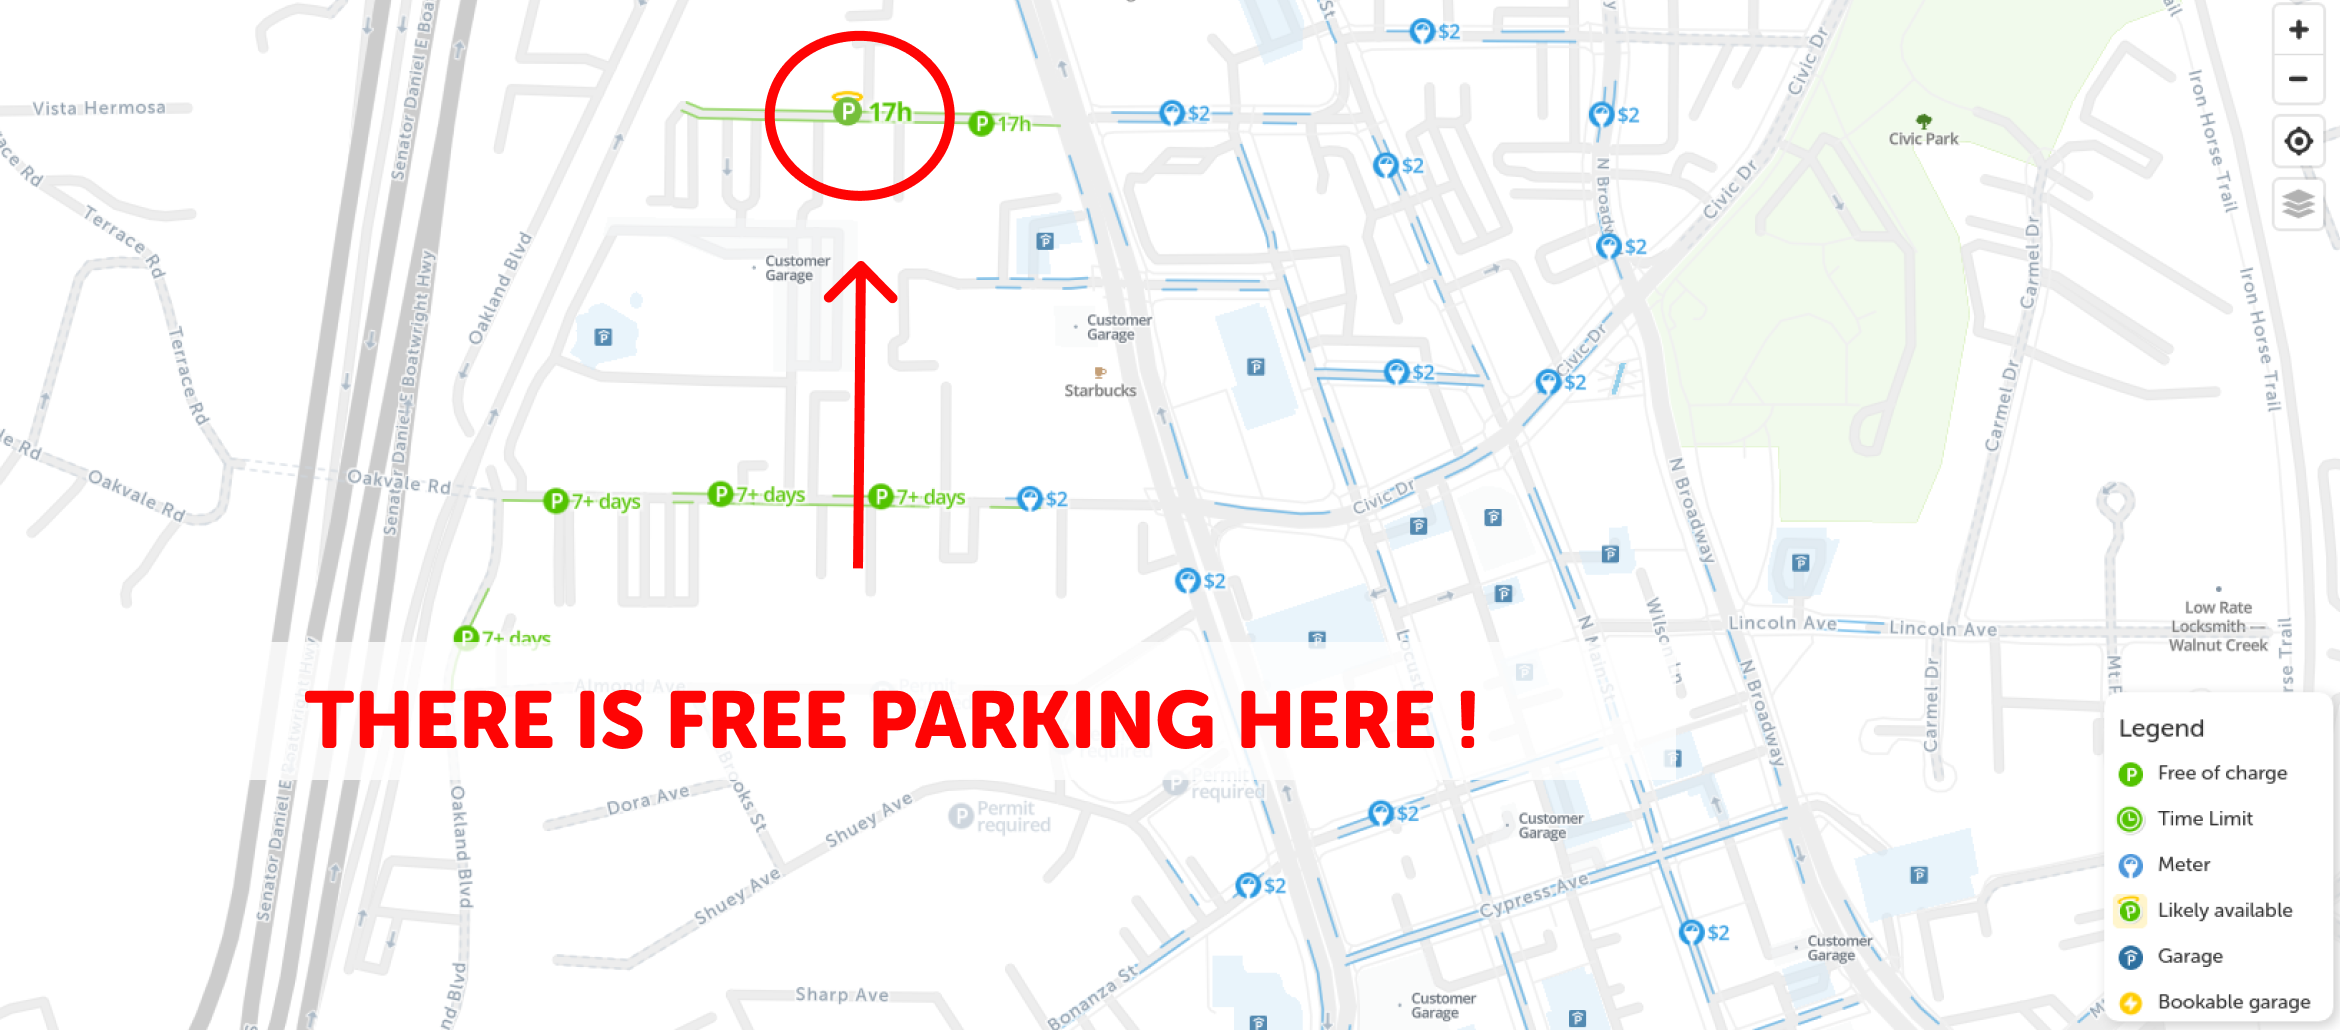 map of free parking in Walnut creek - SpotAngels